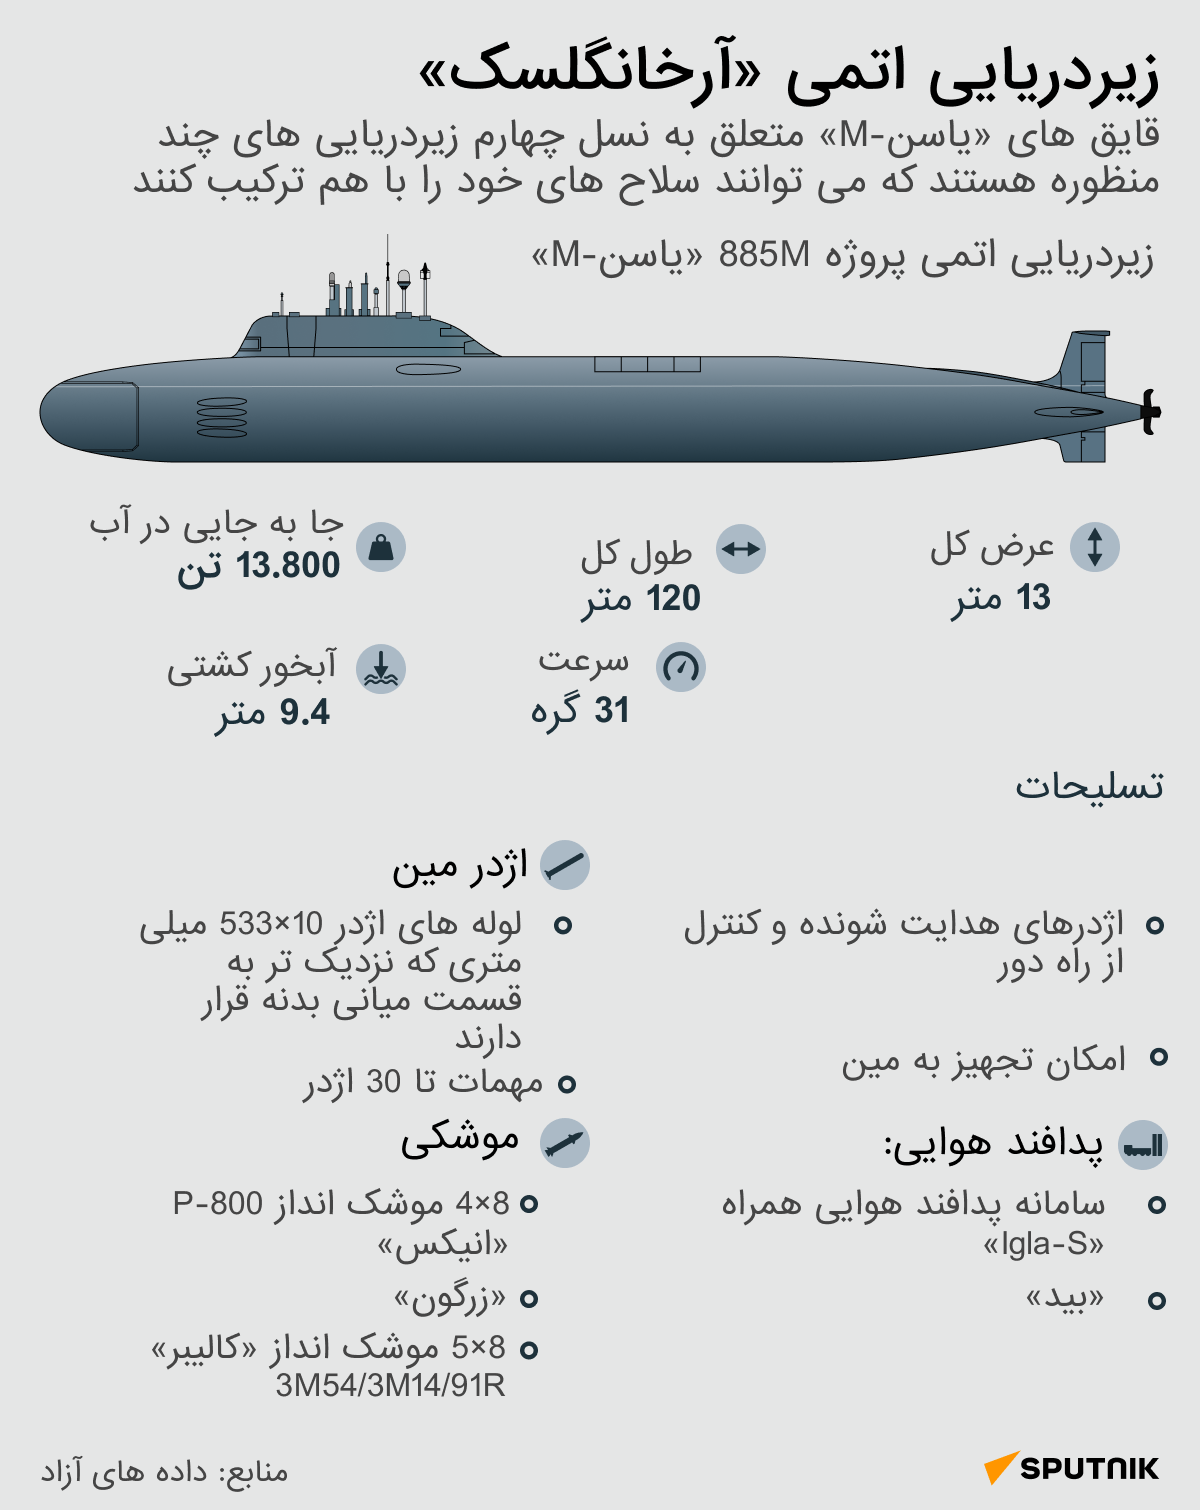 زیردریایی اتمی آرخانگلسک - اسپوتنیک ایران  